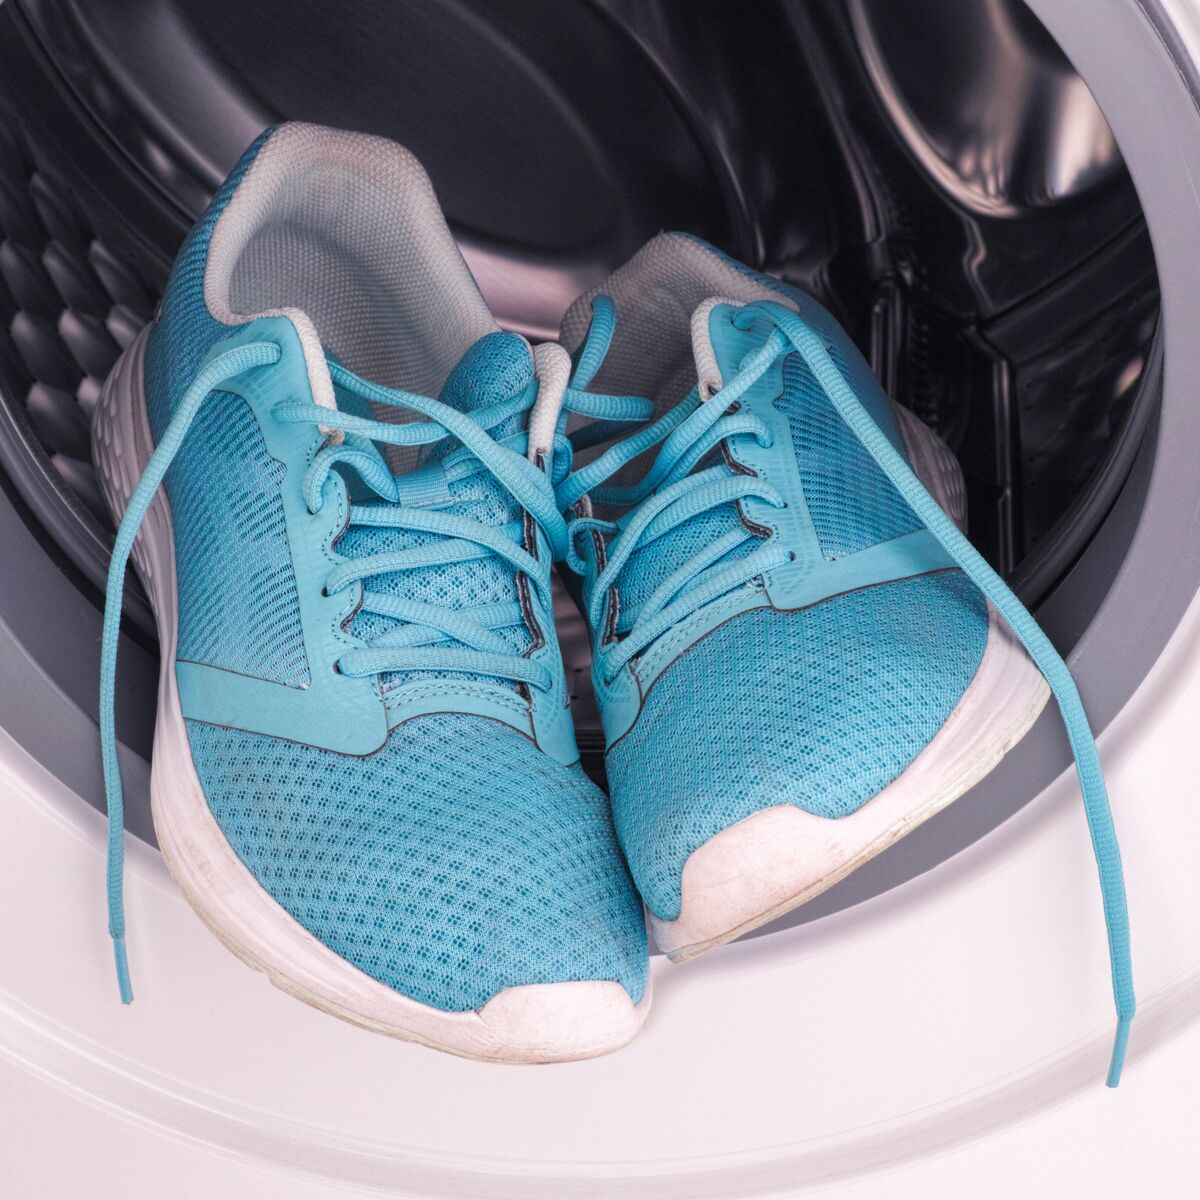 Comment laver ses chaussures en machine ? 